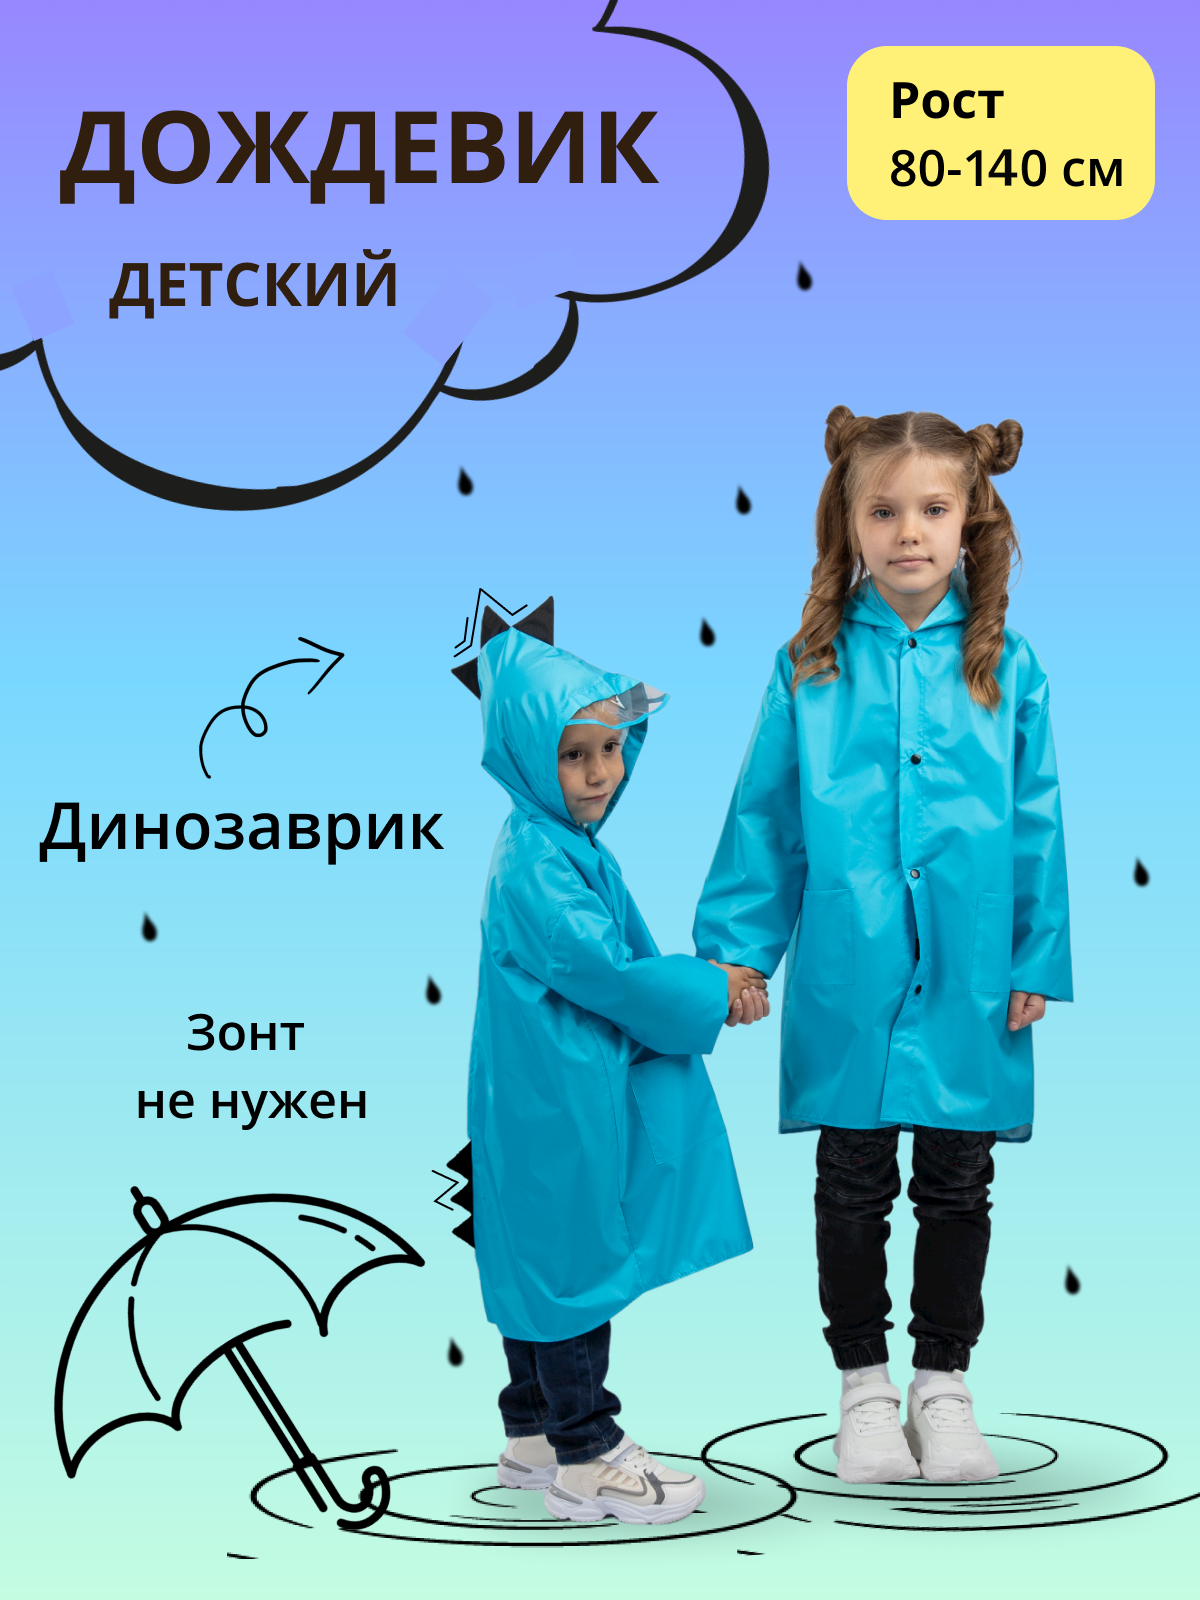 Дождевик детский Под дождем 122905588, голубой, 80